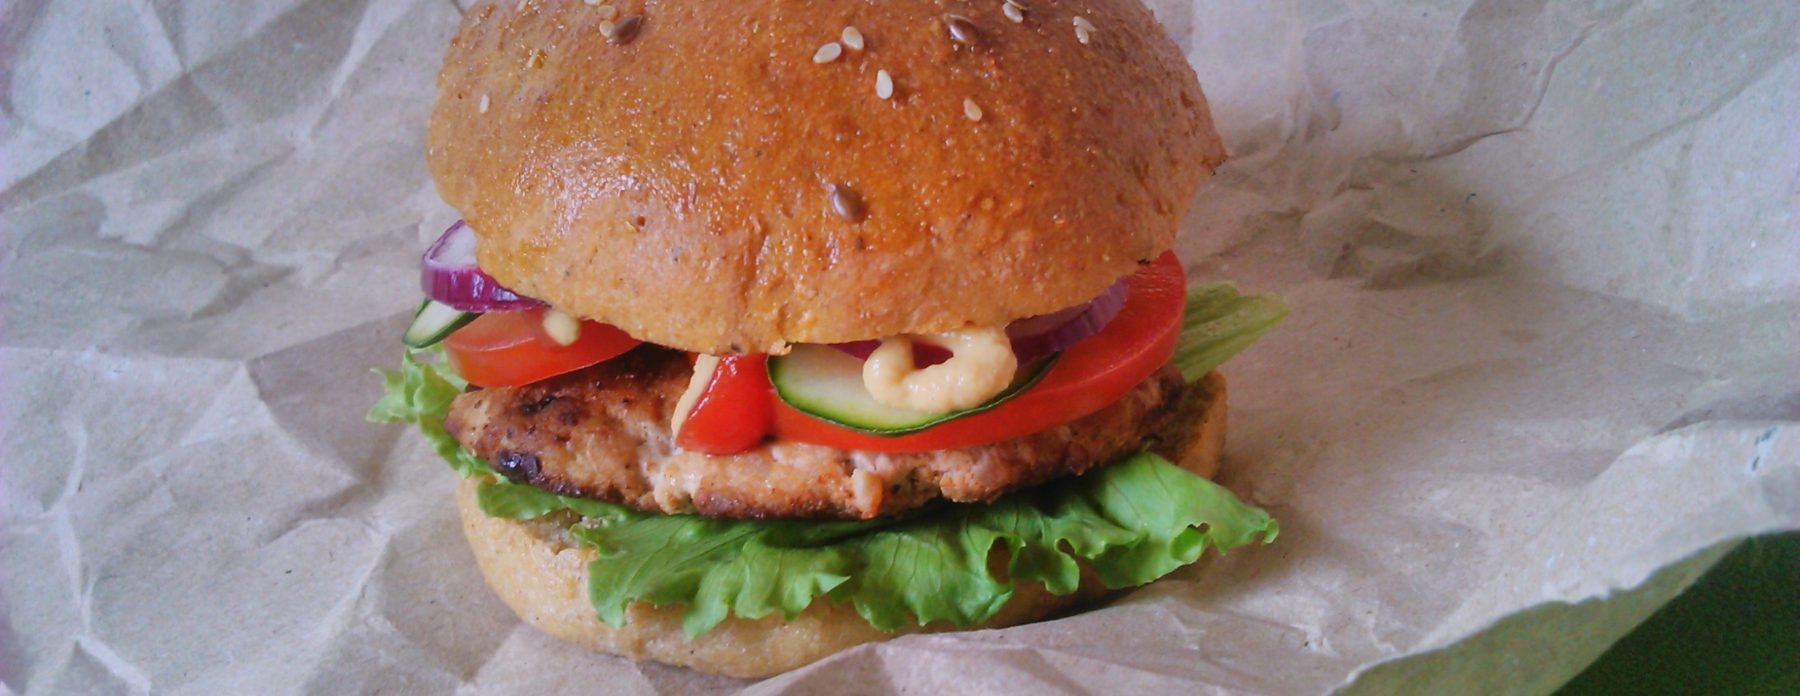 Diétás hamburger zsemle szénhidrátcsökkentett lisztből